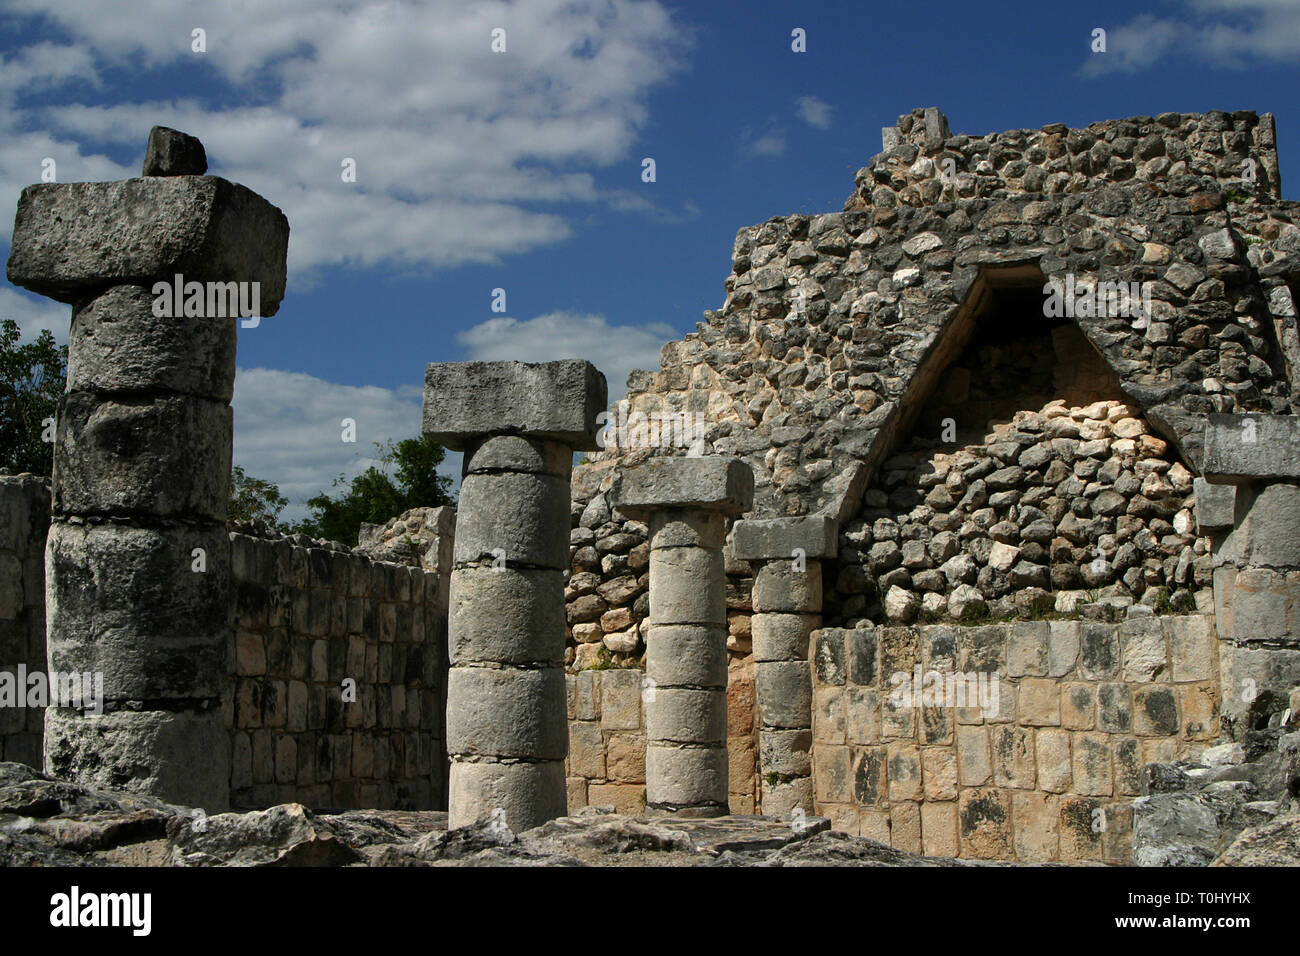 Zona arqueologica de Chichen Itza Zona arqueológica    Chichén ItzáChichén Itzá maya: (Chichén) Boca del pozo;   de los (Itzá) brujos de agua.   Es uno de los principales sitios arqueológicos de la   península de Yucatán, en México, ubicado en el municipio de Tinum.  *Photo:©Francisco* Morales/DAMMPHOTO.COM/NORTEPHOTO Stock Photo